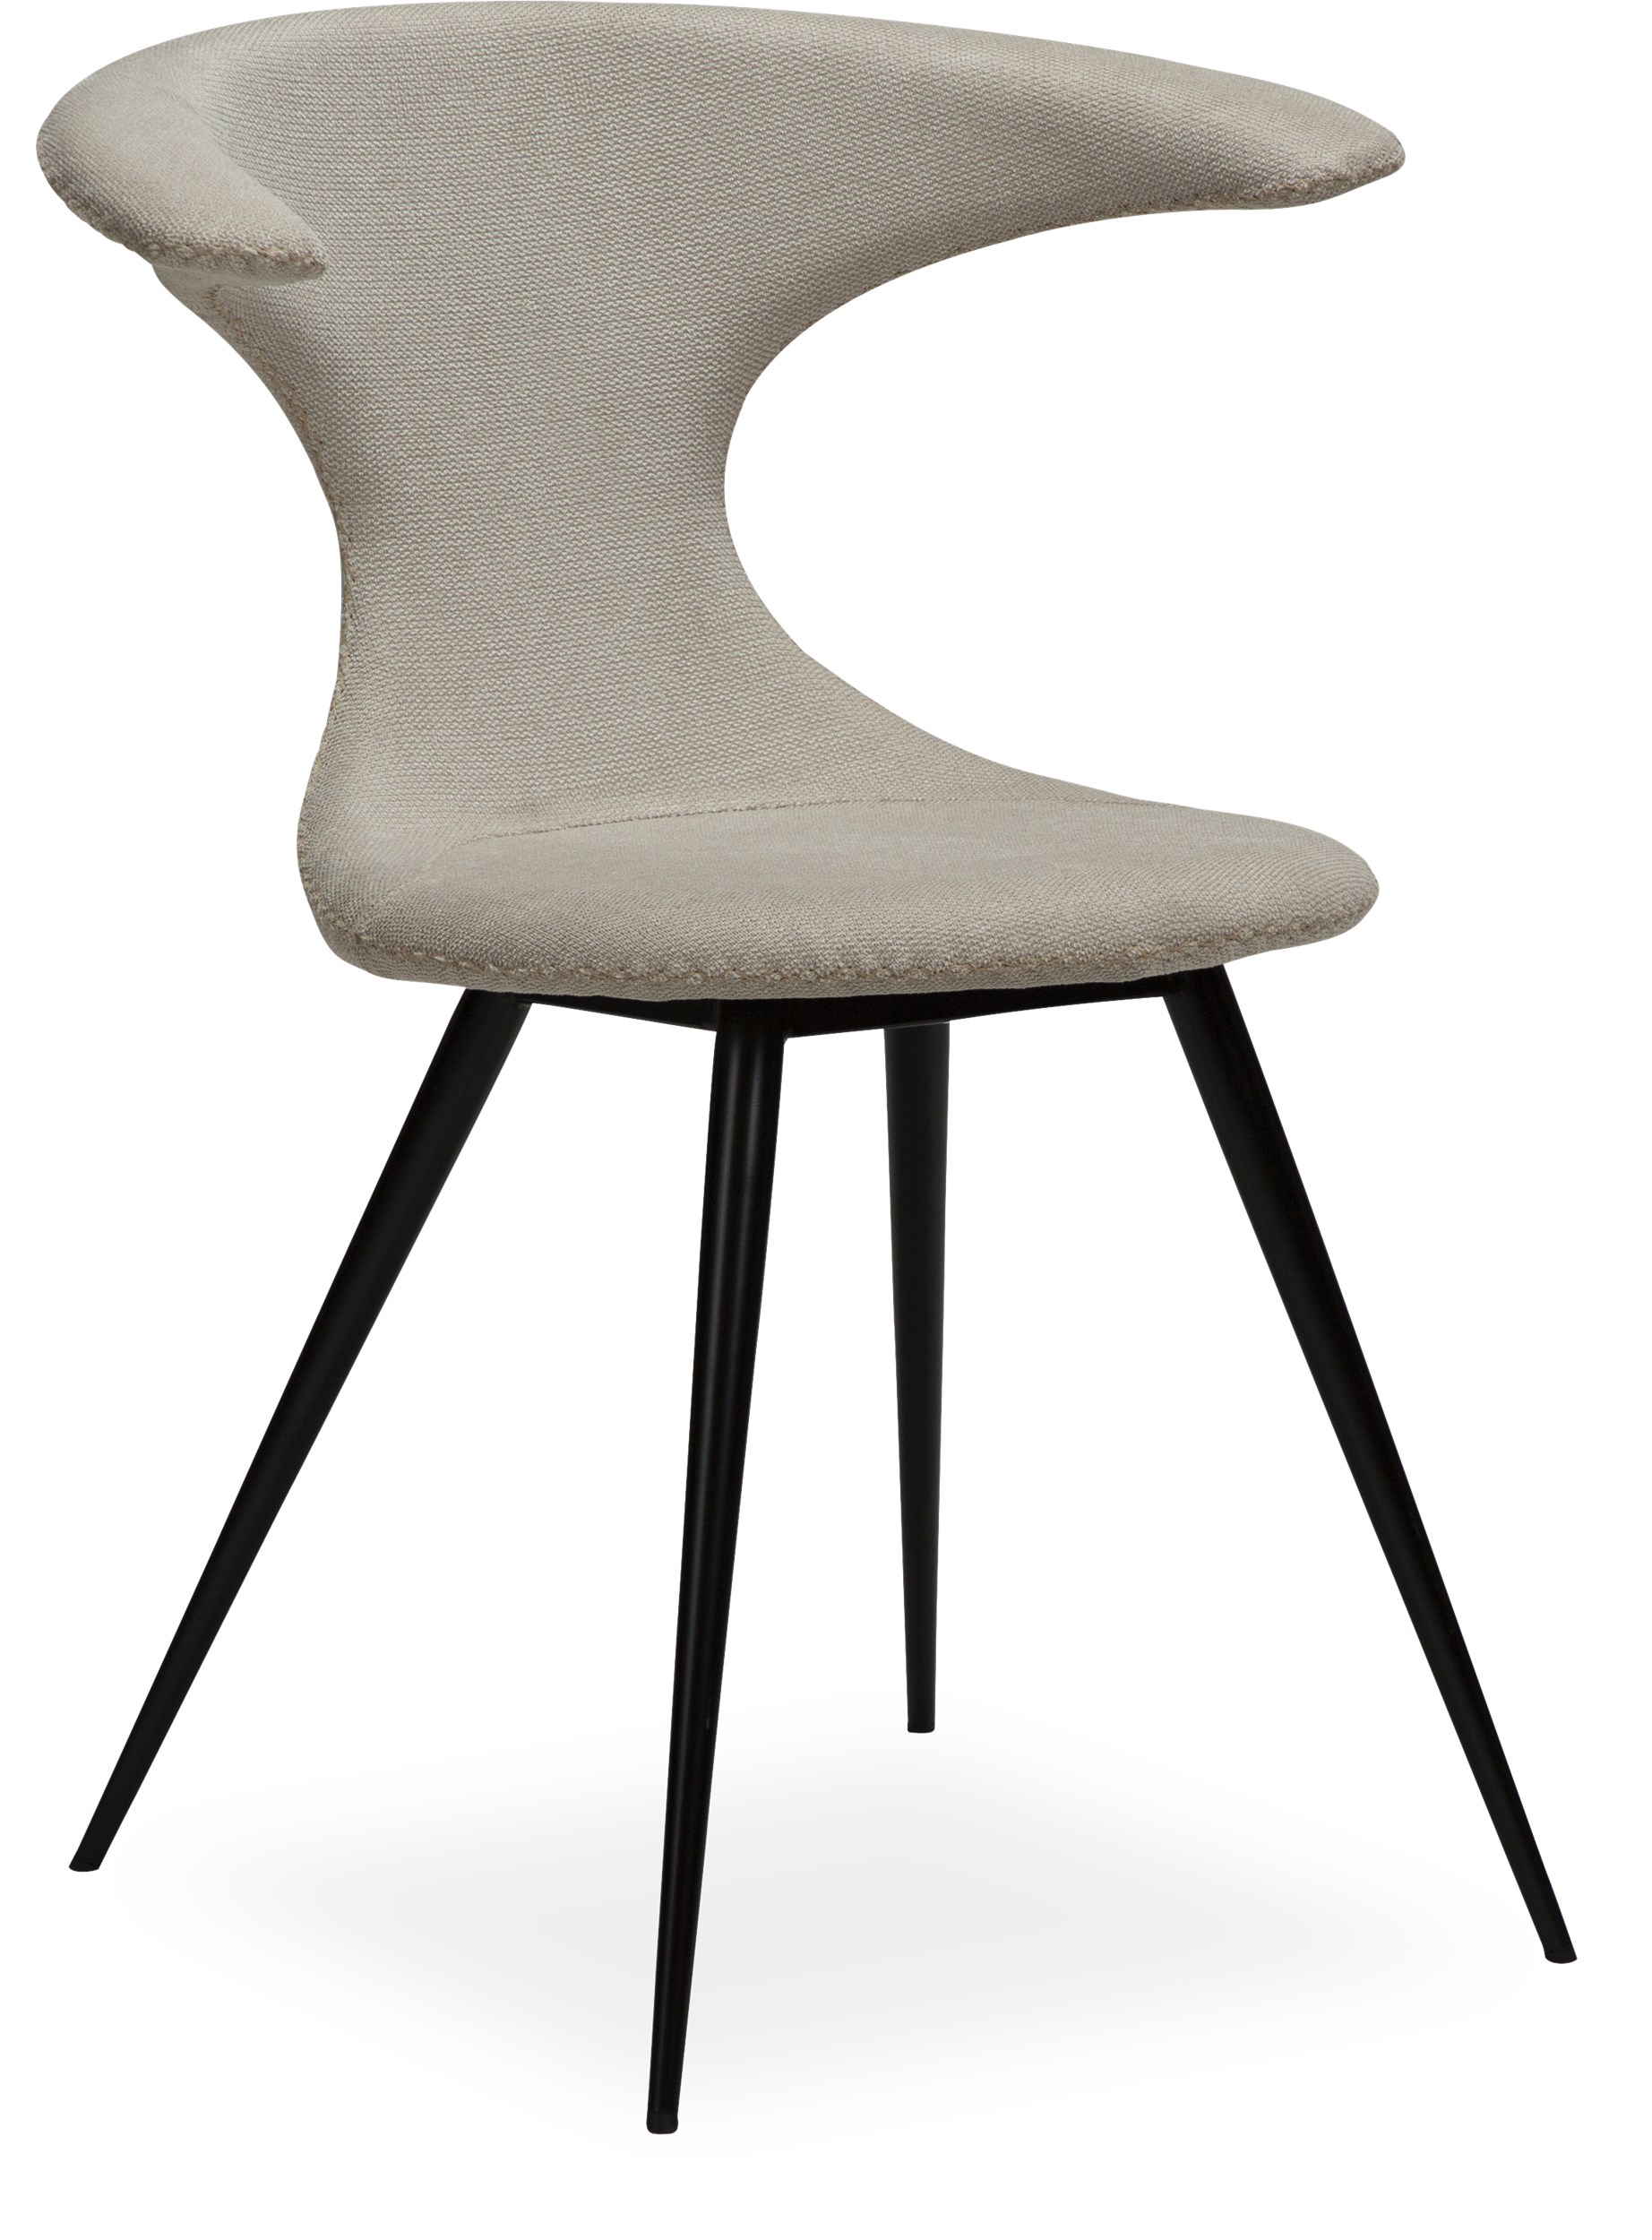 Flaire Spisebordsstol - Sæde i desert sand stof, uden kontrastsyninger og runde ben i sortlakeret metal